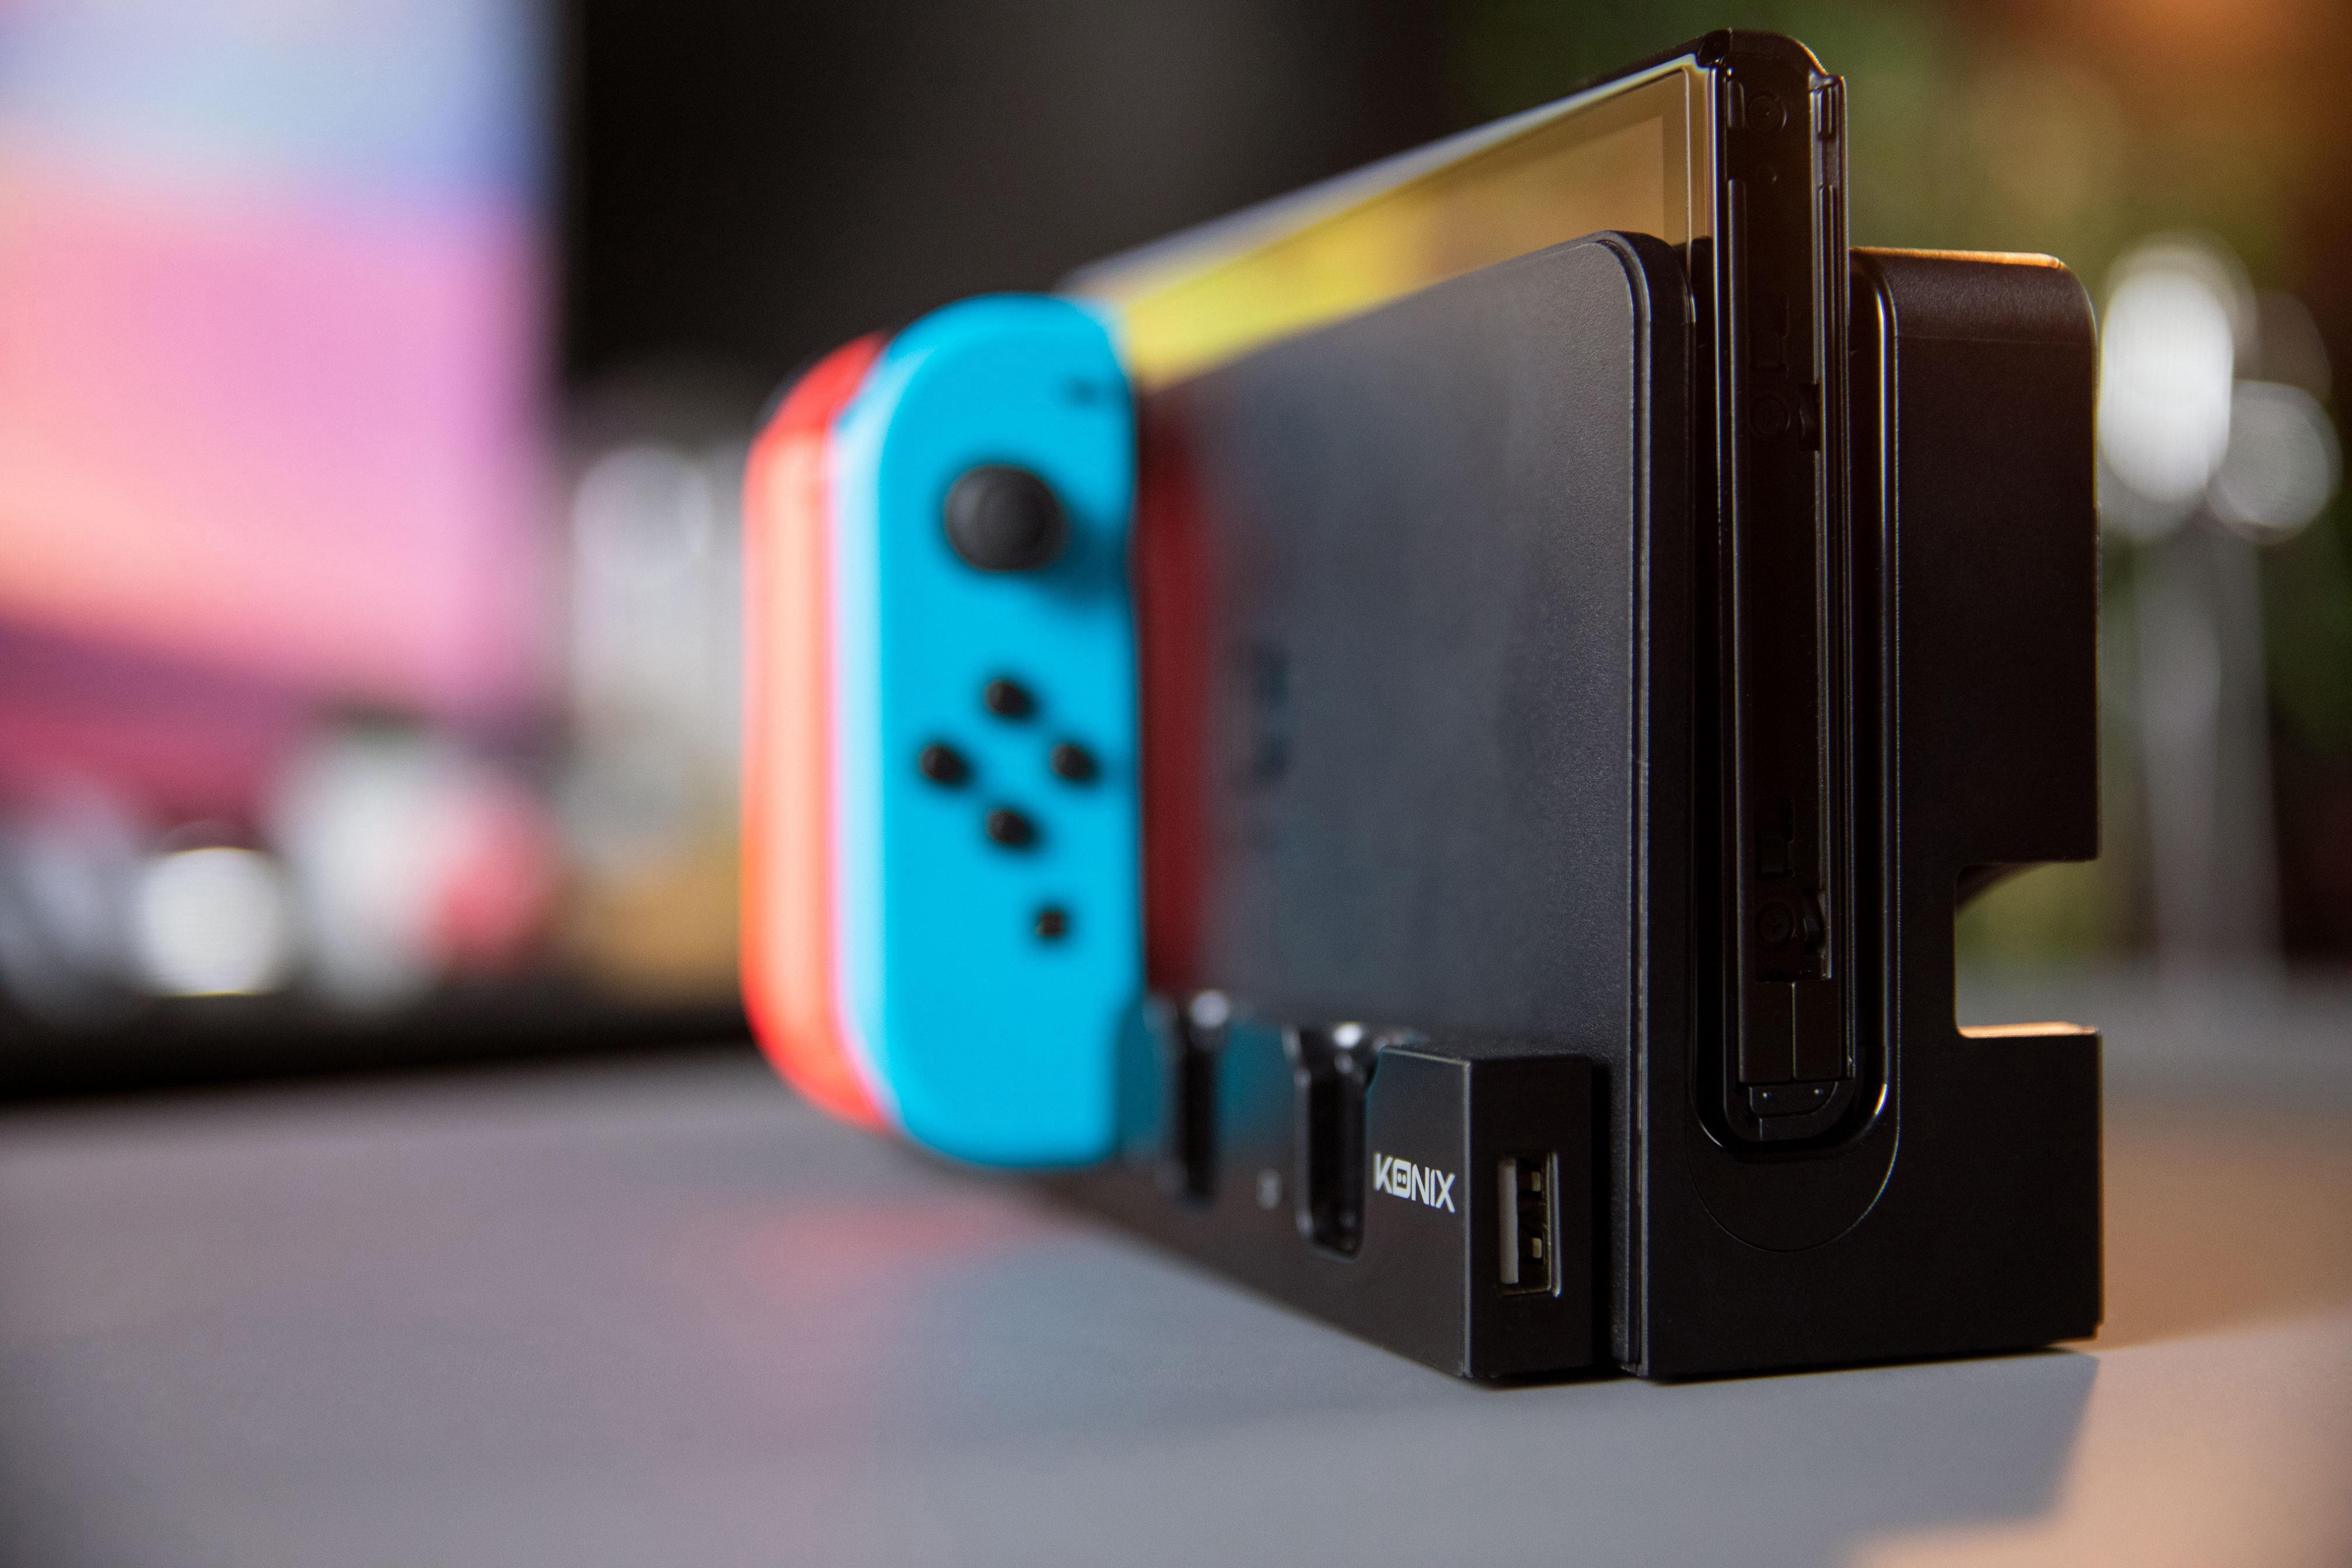 Ladestation Zubehör Nintendo für KONIX Switch, Multifunktions für Mehrfarbig Switch,